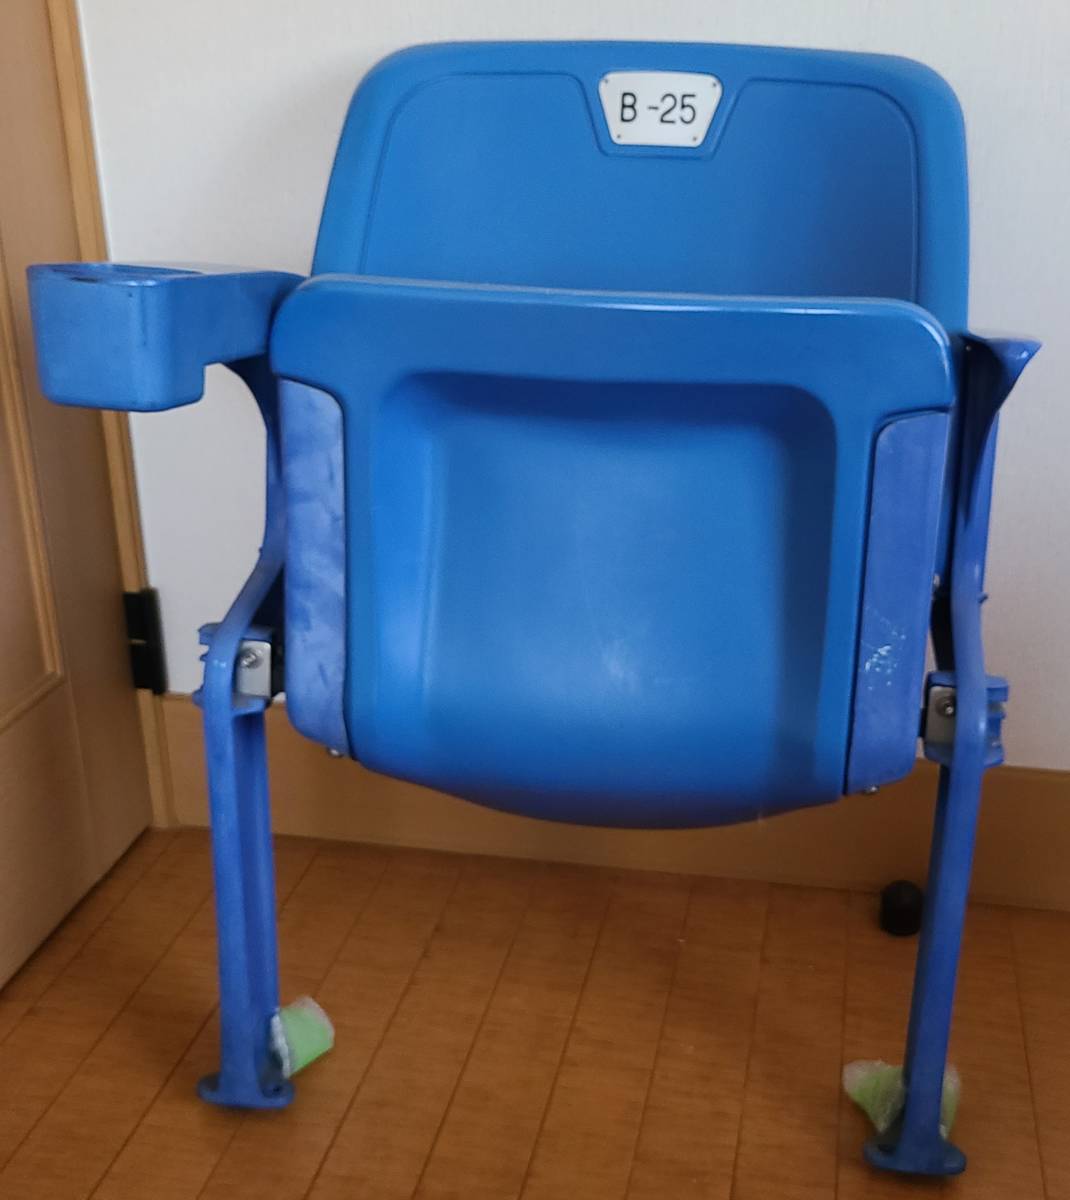 旧国立競技場で使用されたVIPシート。公式証明プレート付。多くの昭和、平成の名勝負、オリンピックの生き証人とも言うべきレアアイテム